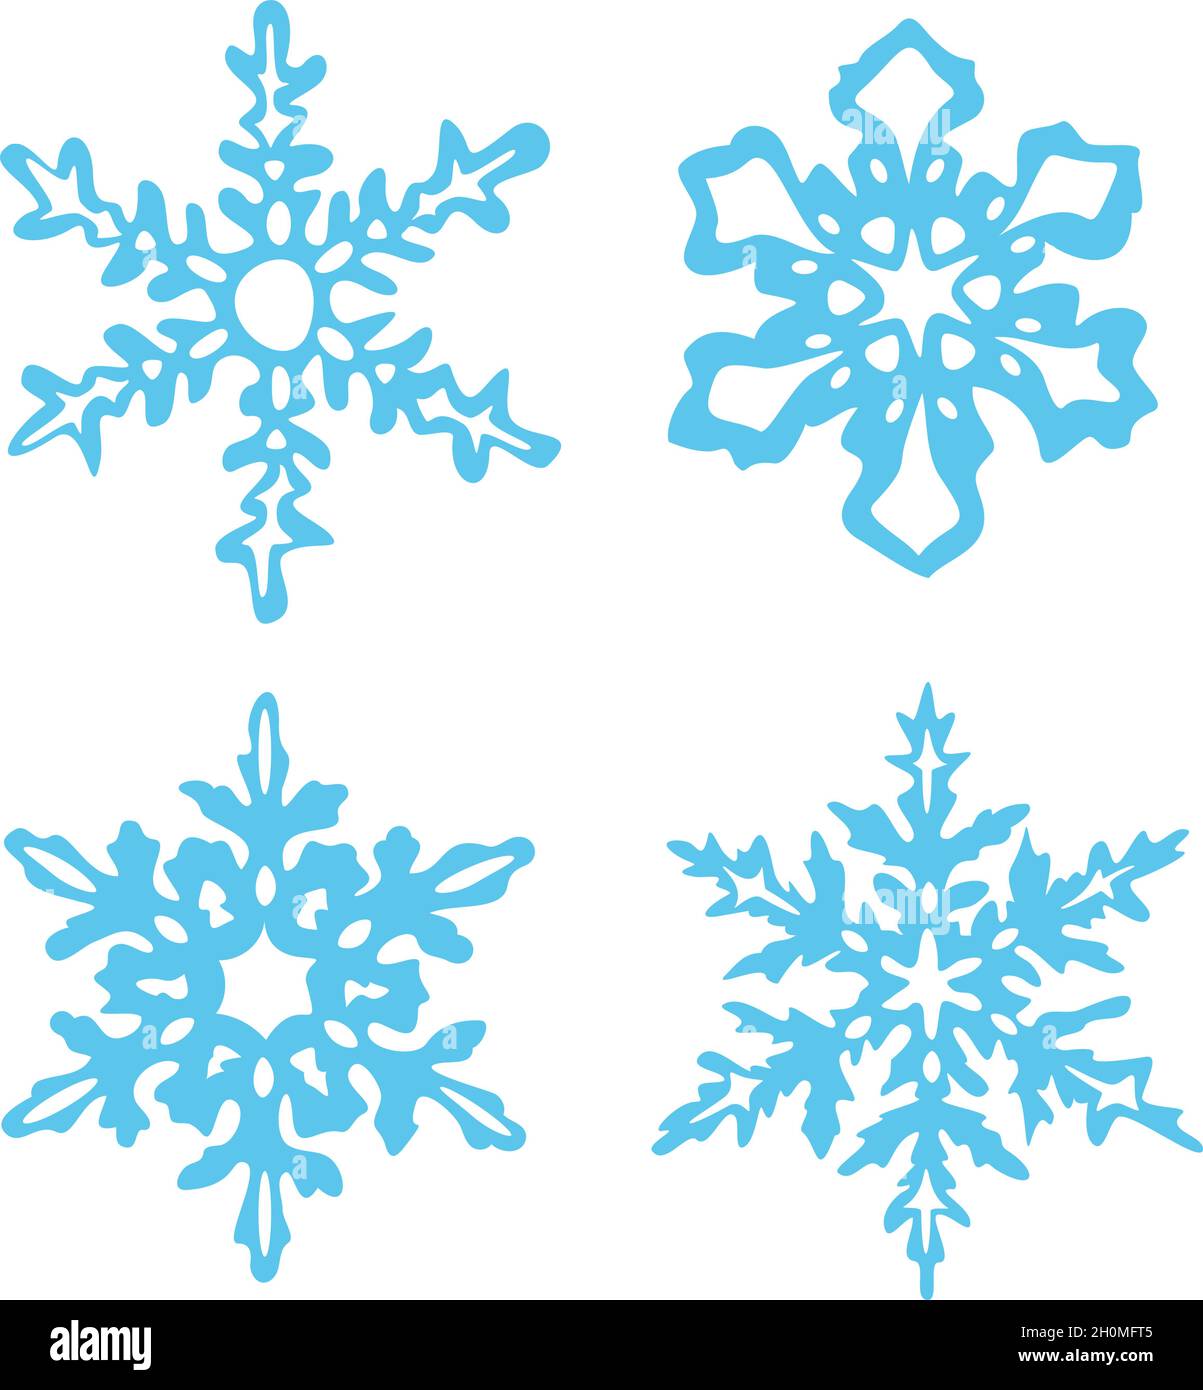 Vektorgrafik mit Sammlung von Schneeflocken. Dekorative Schneeflocken. Isoliert auf weißem Hintergrund. Stock Vektor